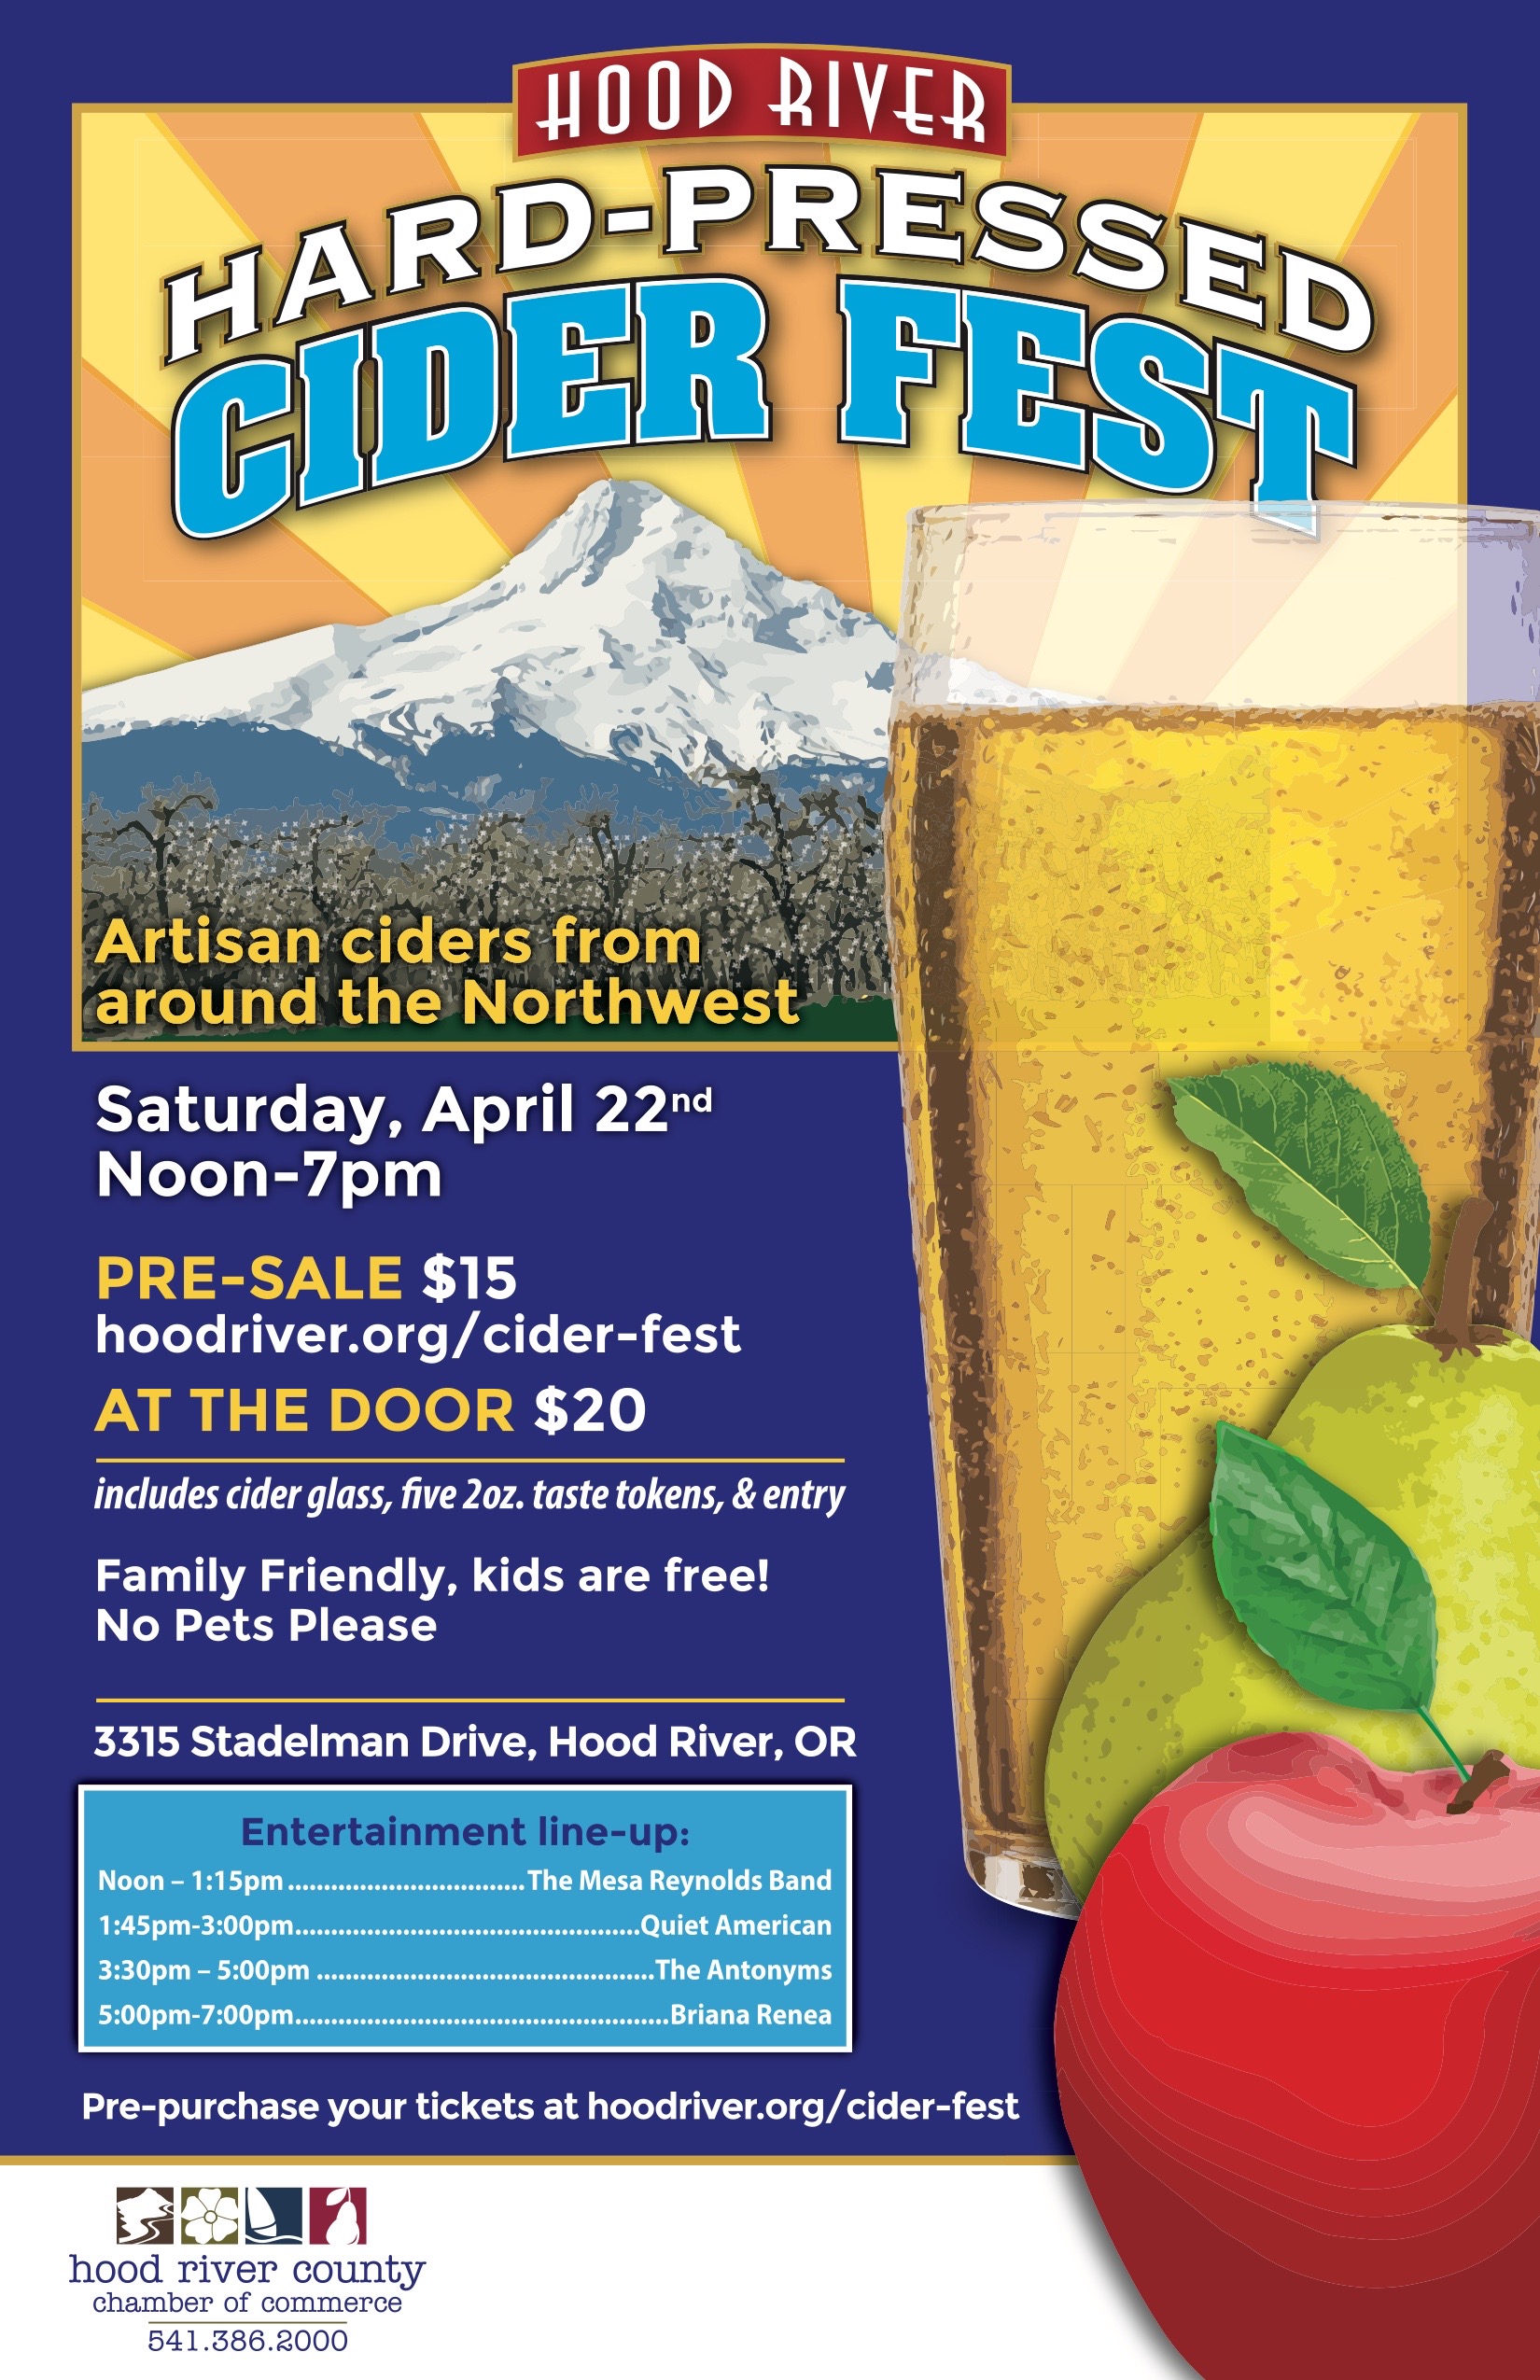 4th Annual Hood River HardPressed Cider Fest Returns On April 22nd